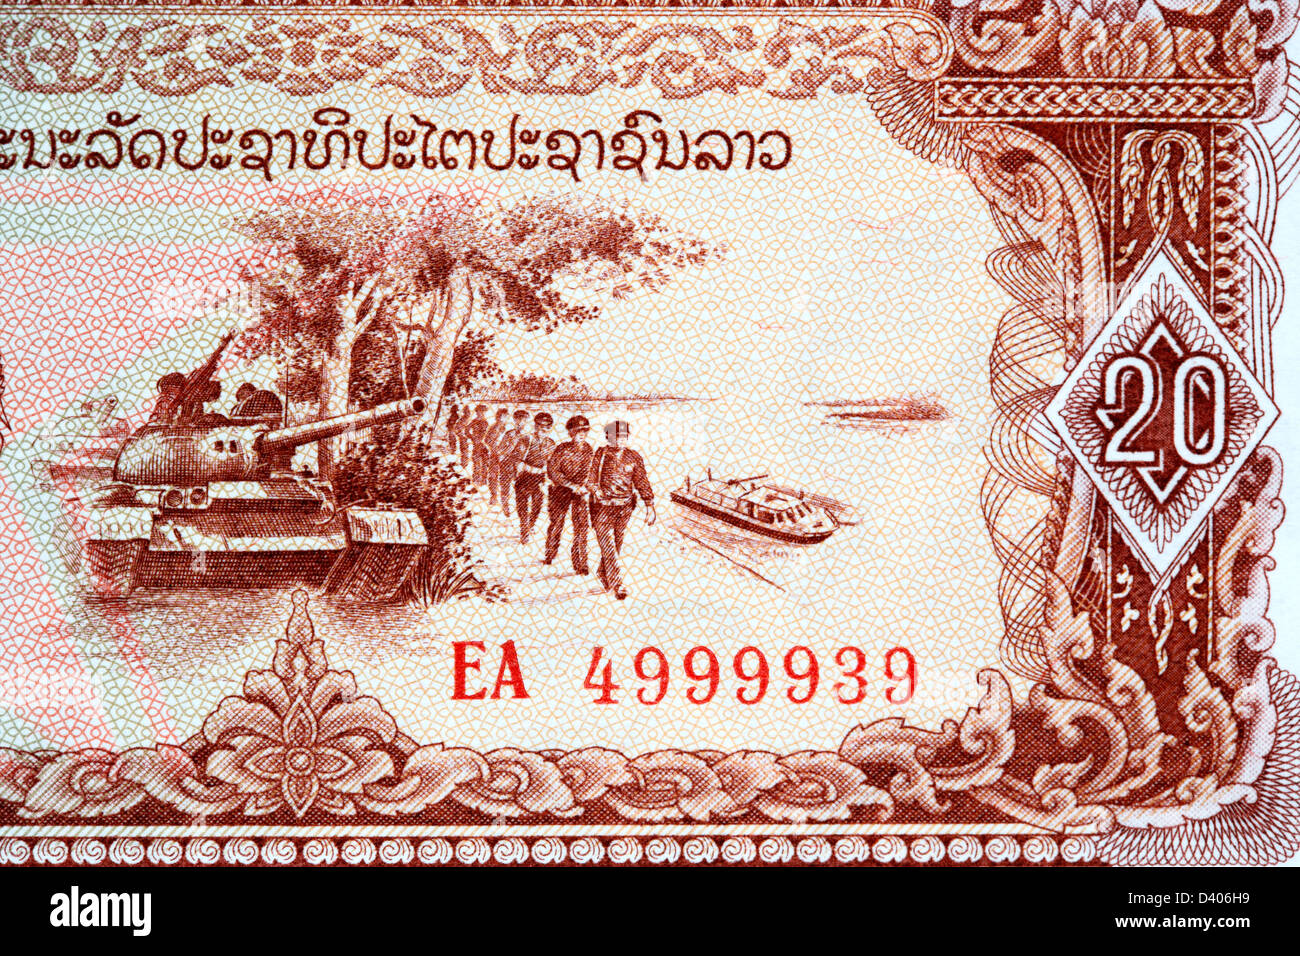 Réservoir et soldats de 20 billets Kip, Laos, 1979 Banque D'Images